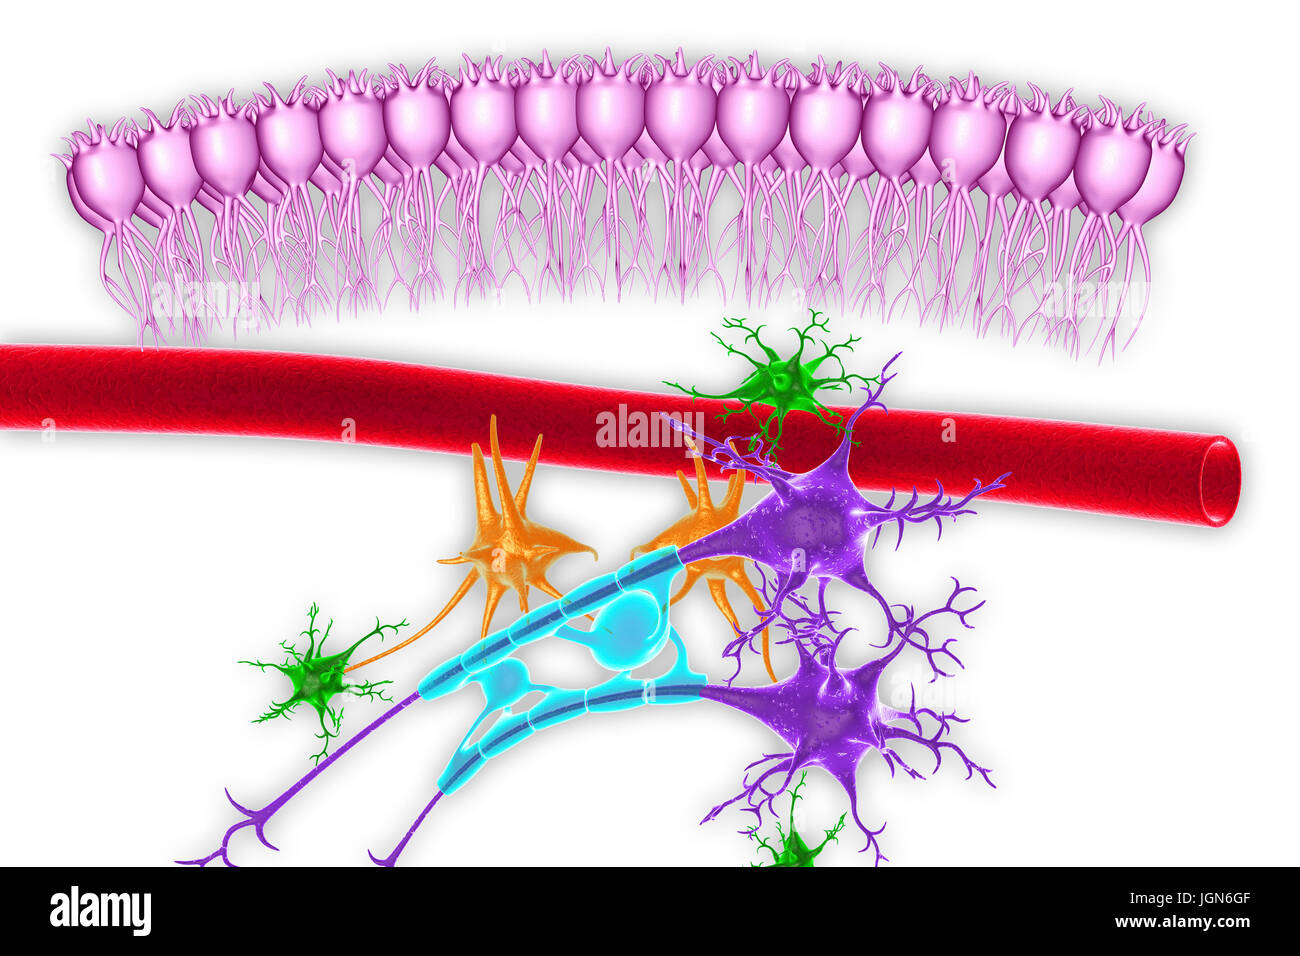 Les tissus nerveux du cerveau, de l'illustration. Vu ependymal voici les cellules (rose), un capillaire (rouge), les astrocytes (vert), les microglies (orange) et deux cellules nerveuses (violet) avec des gaines de myéline (bleu clair) sur leurs axones. Banque D'Images